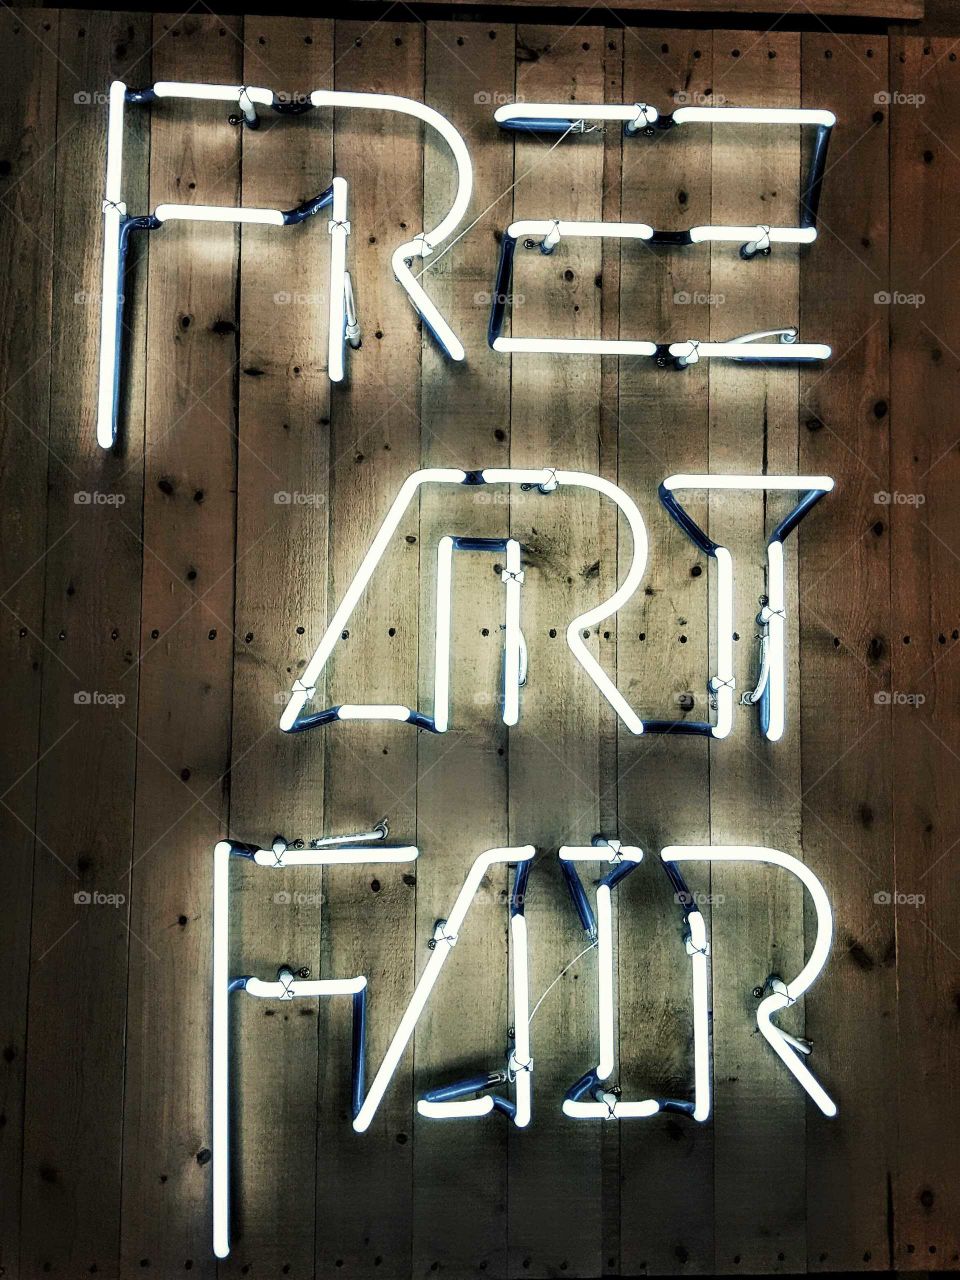 Free Art Fair